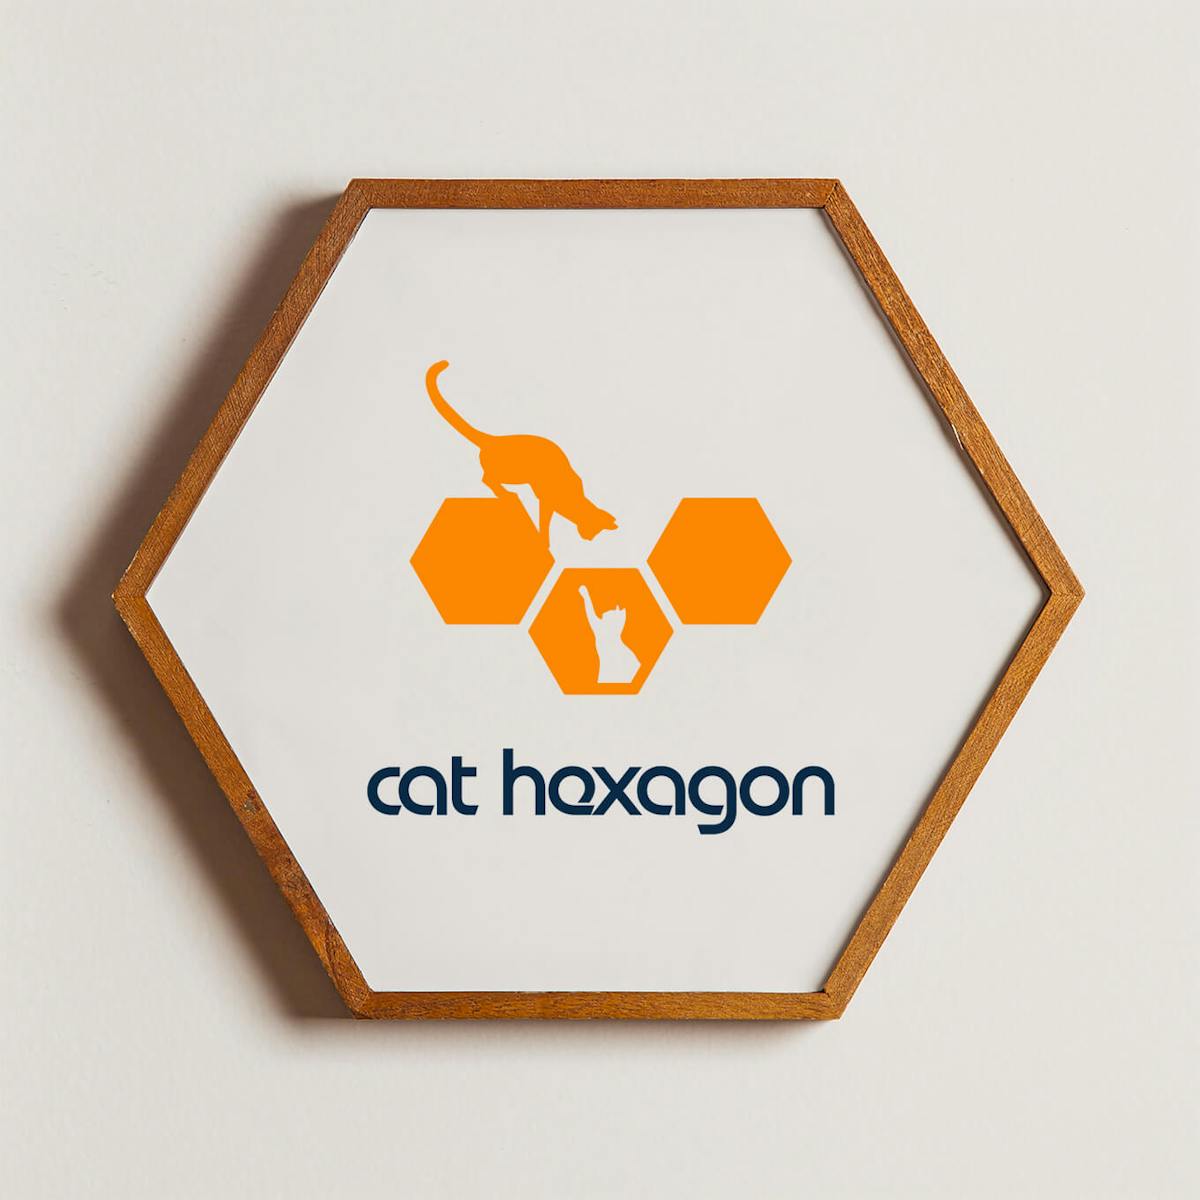 Cat hexagon